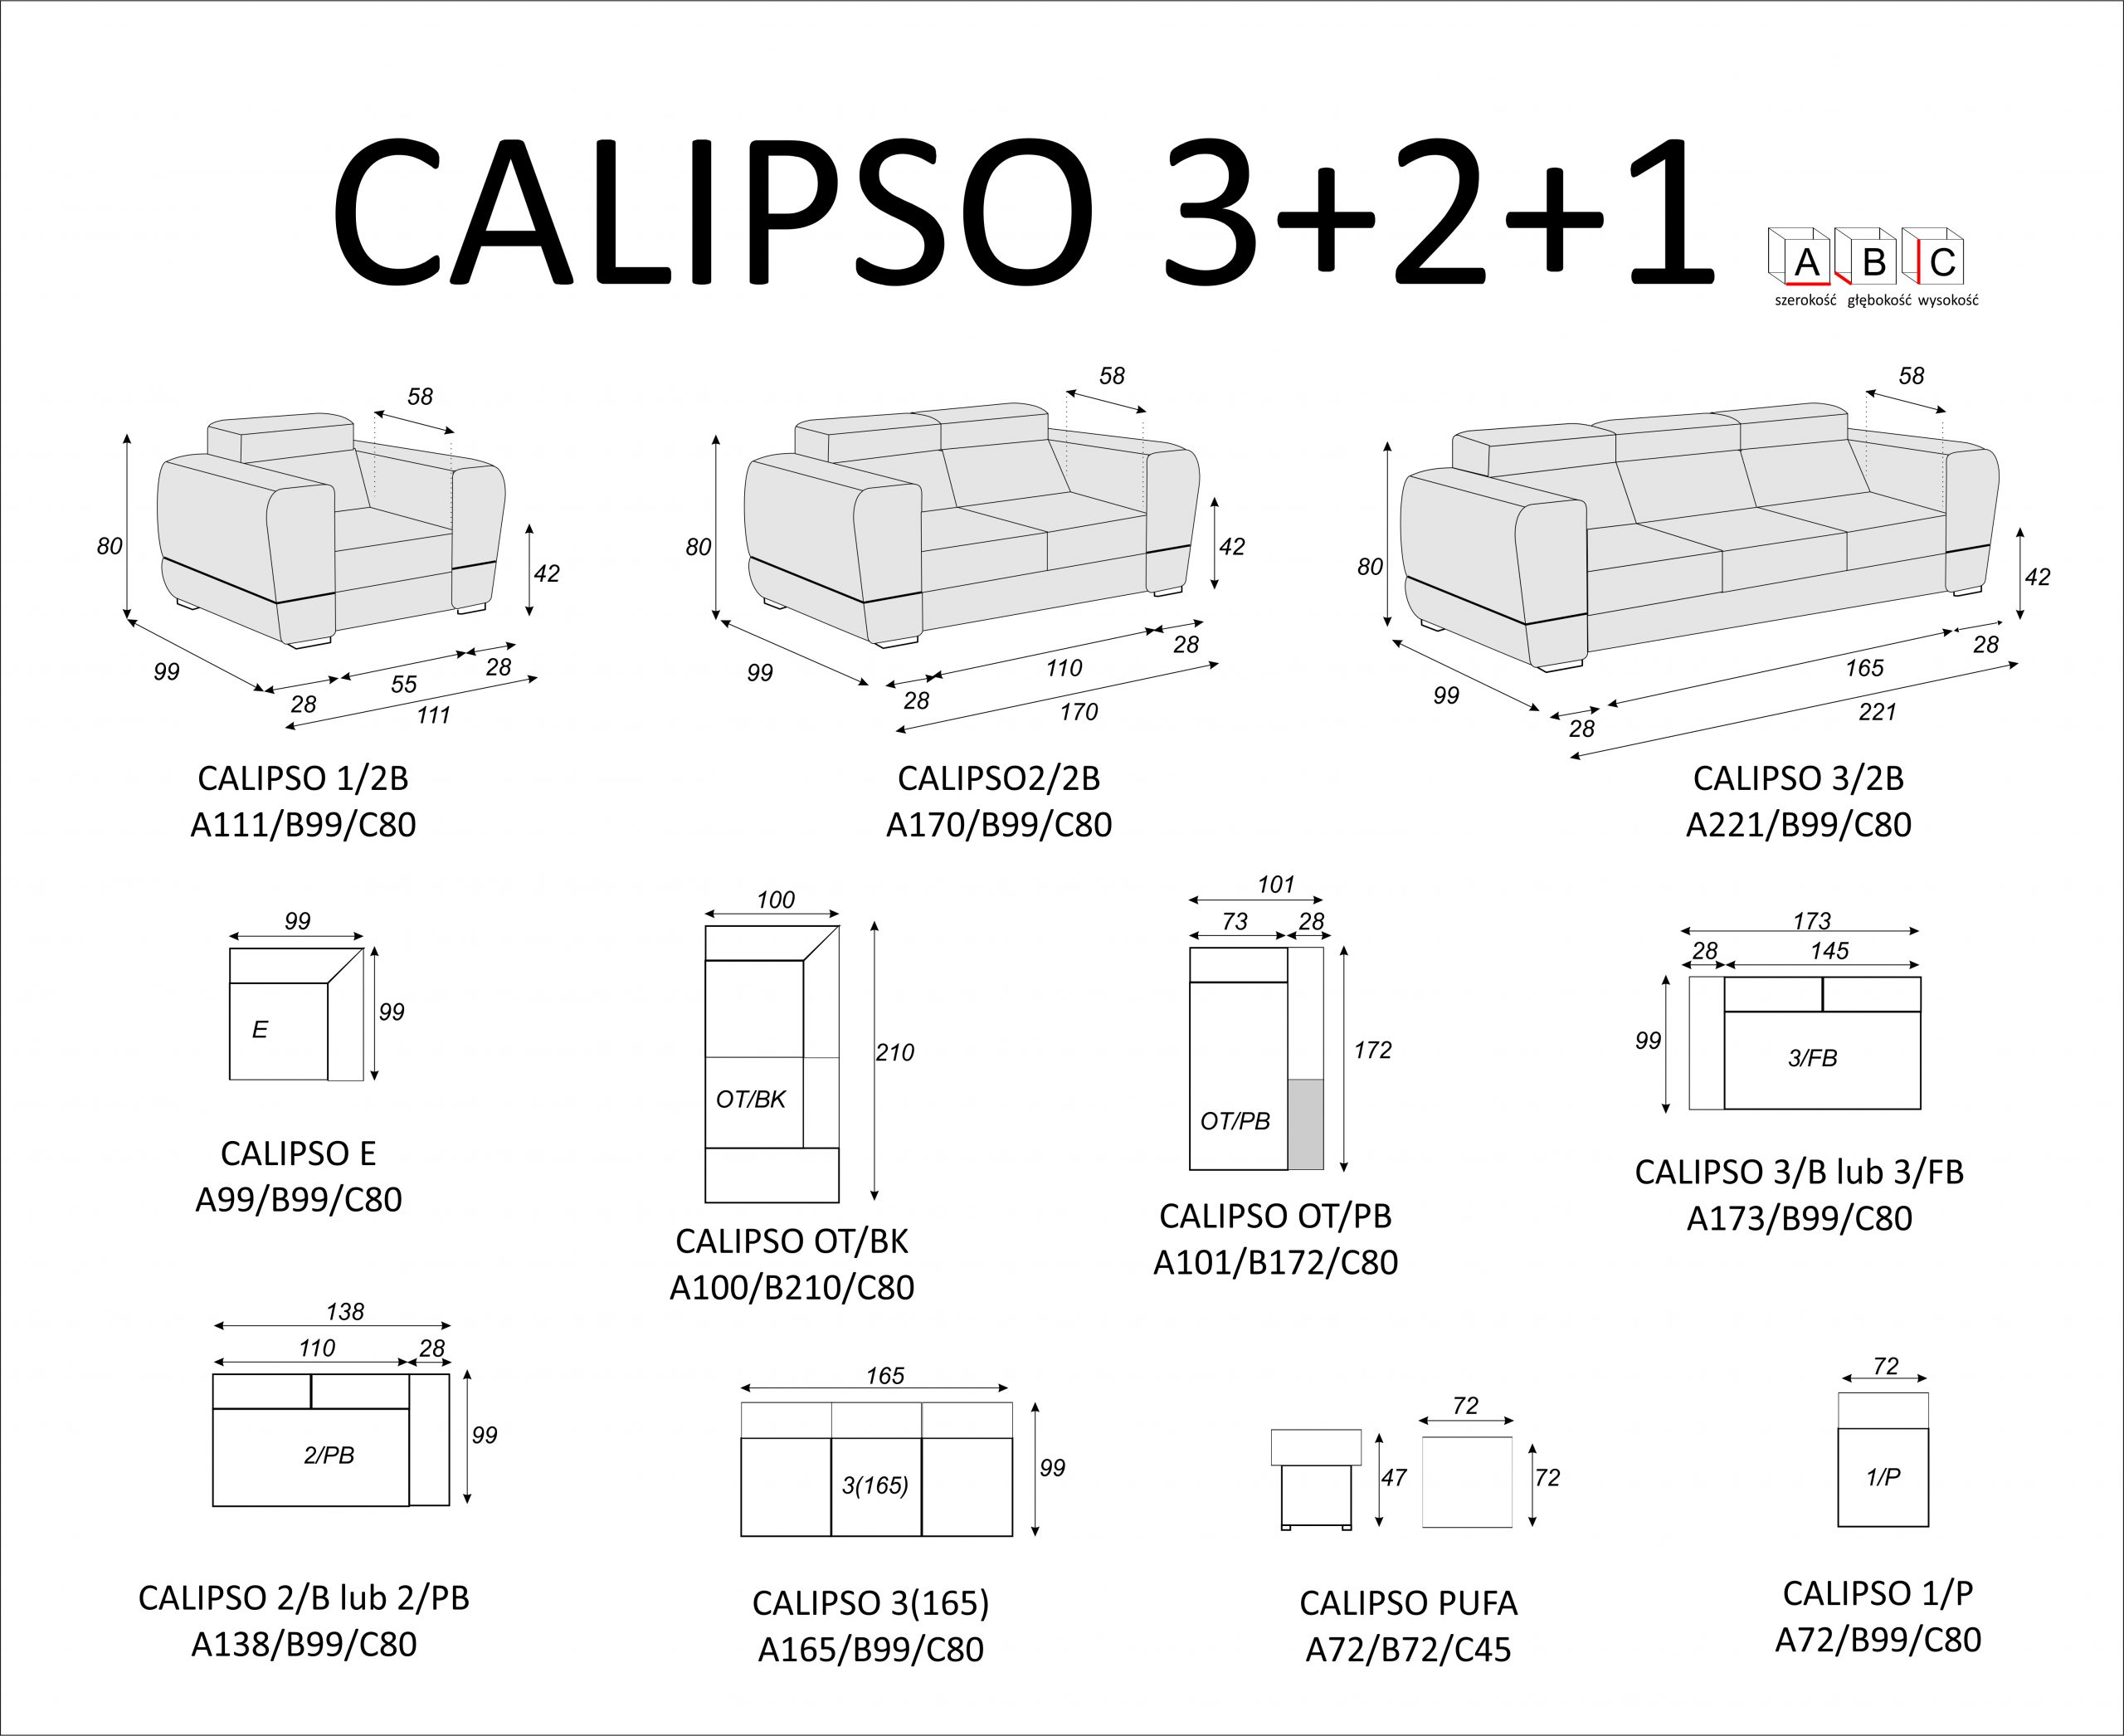 Calipso 3+2+1